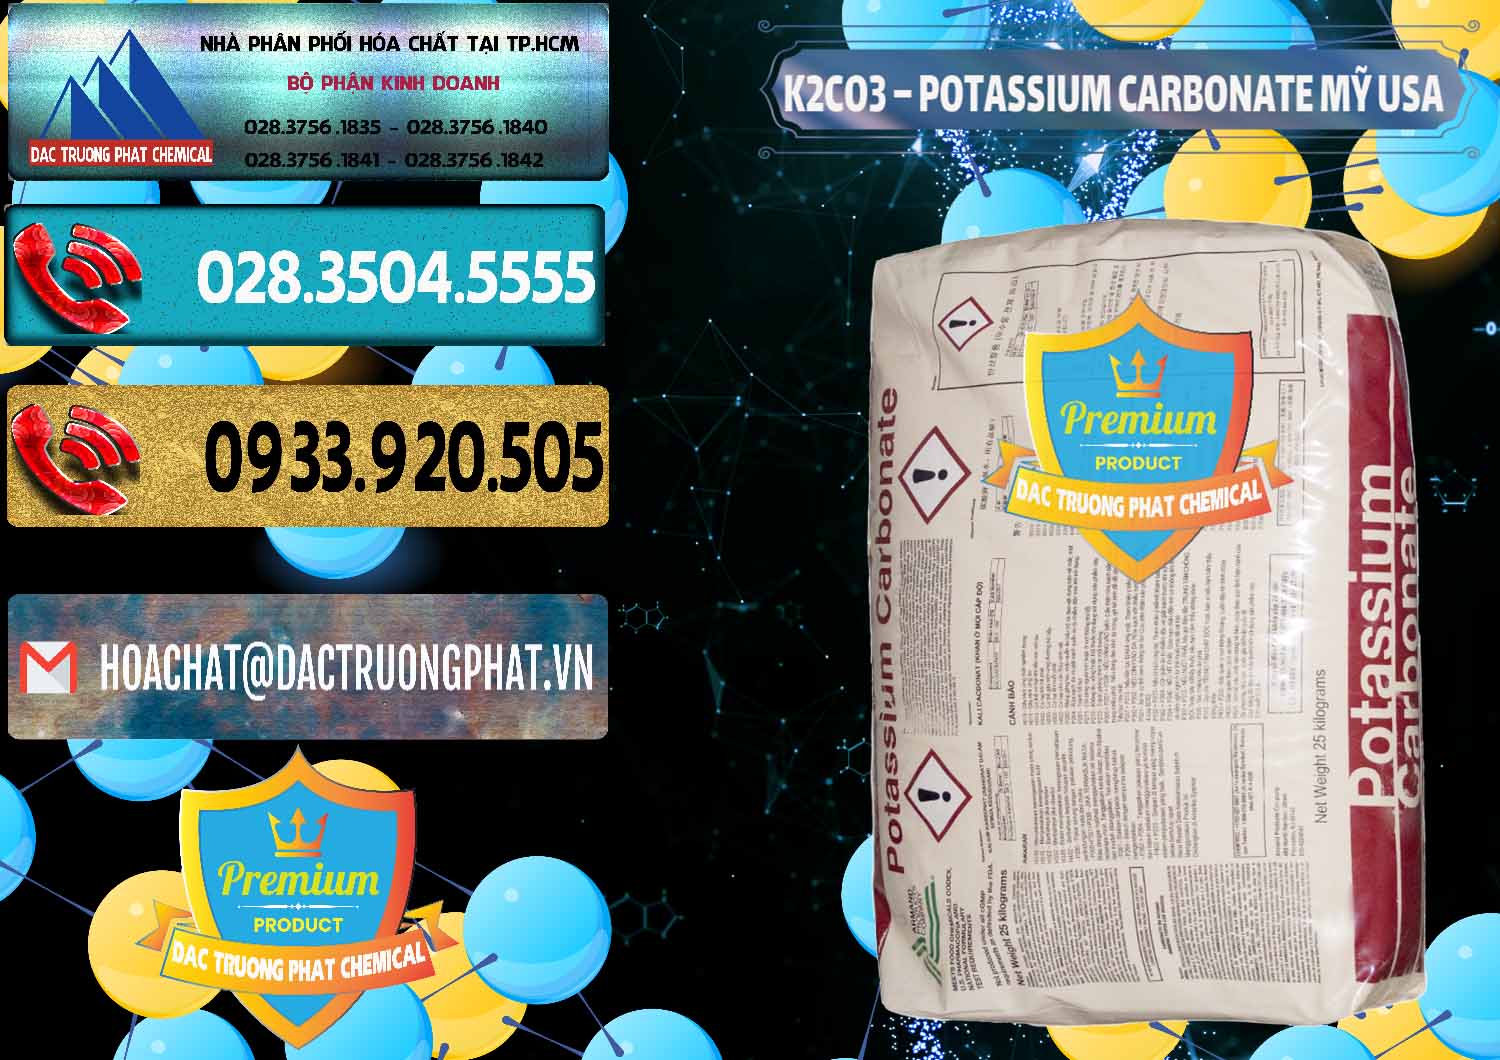 Nhà cung cấp ( bán ) K2Co3 – Potassium Carbonate Mỹ USA - 0082 - Cty cung cấp và nhập khẩu hóa chất tại TP.HCM - hoachatdetnhuom.com